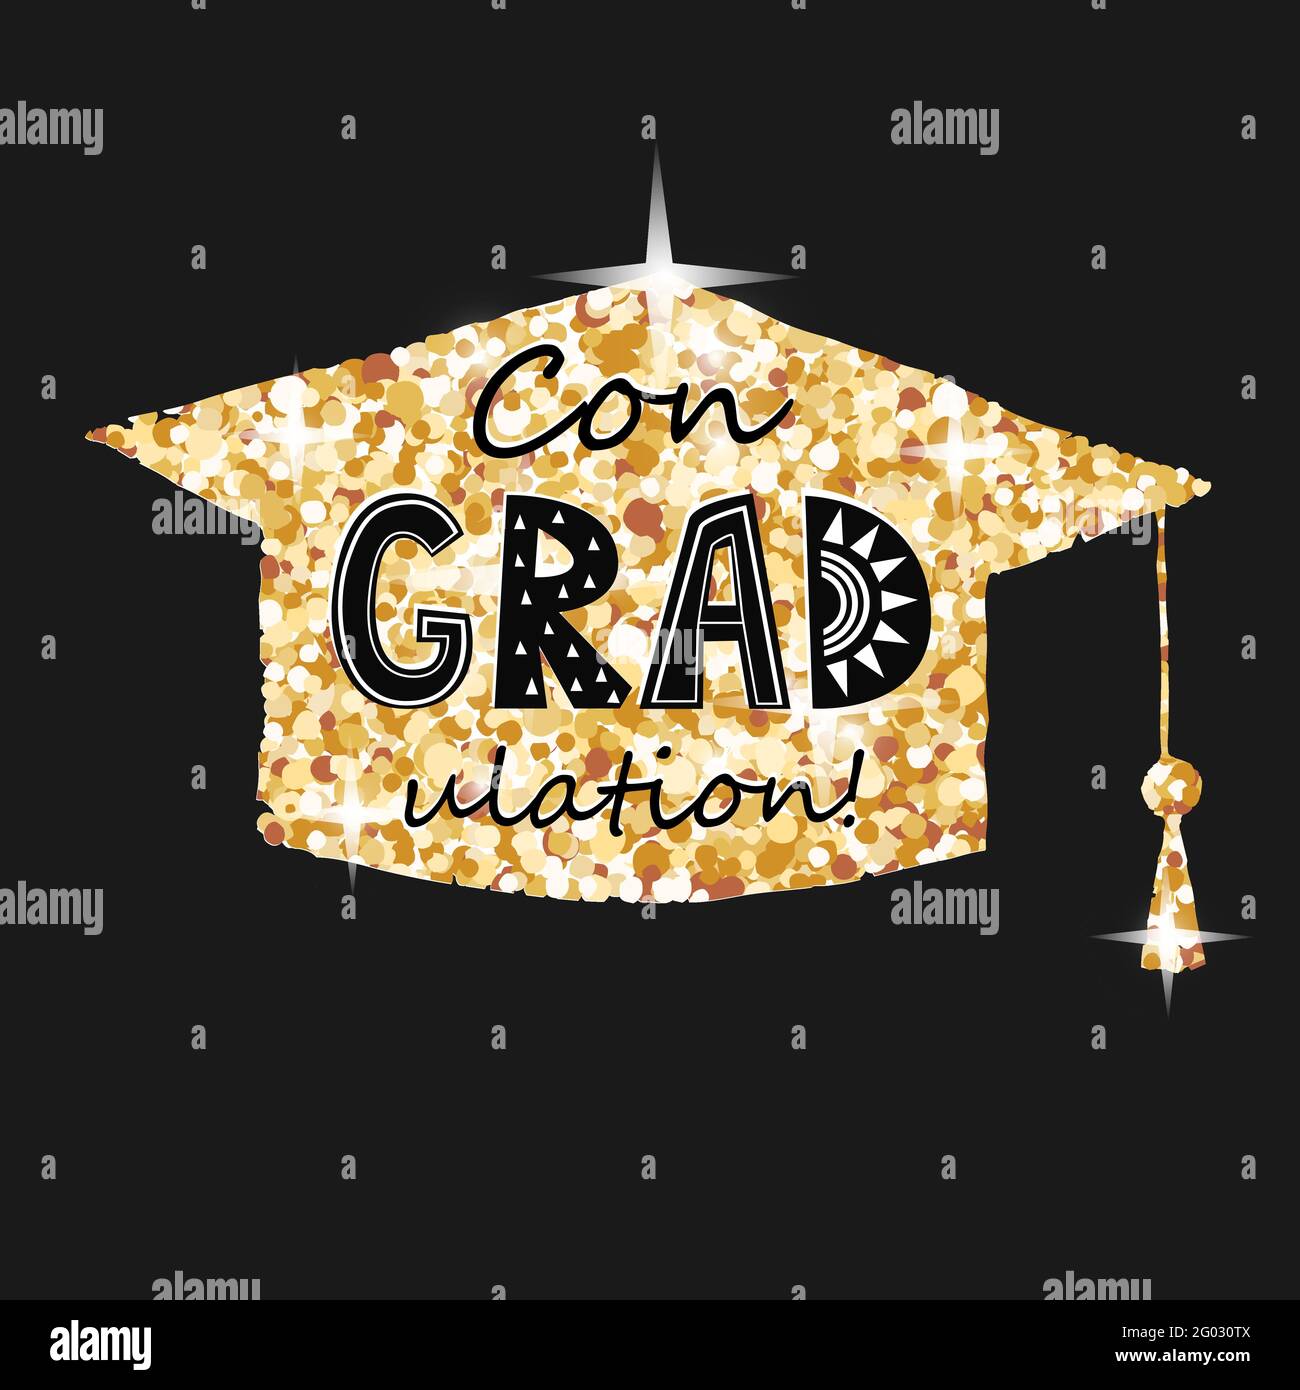 Herzlichen Glückwunsch zum Abschluss, goldene Abschlussmütze mit Congragradulations-Schriftzug in schwarzem Hintergrund. Grußkarte für Abschlussfeier Stock Vektor